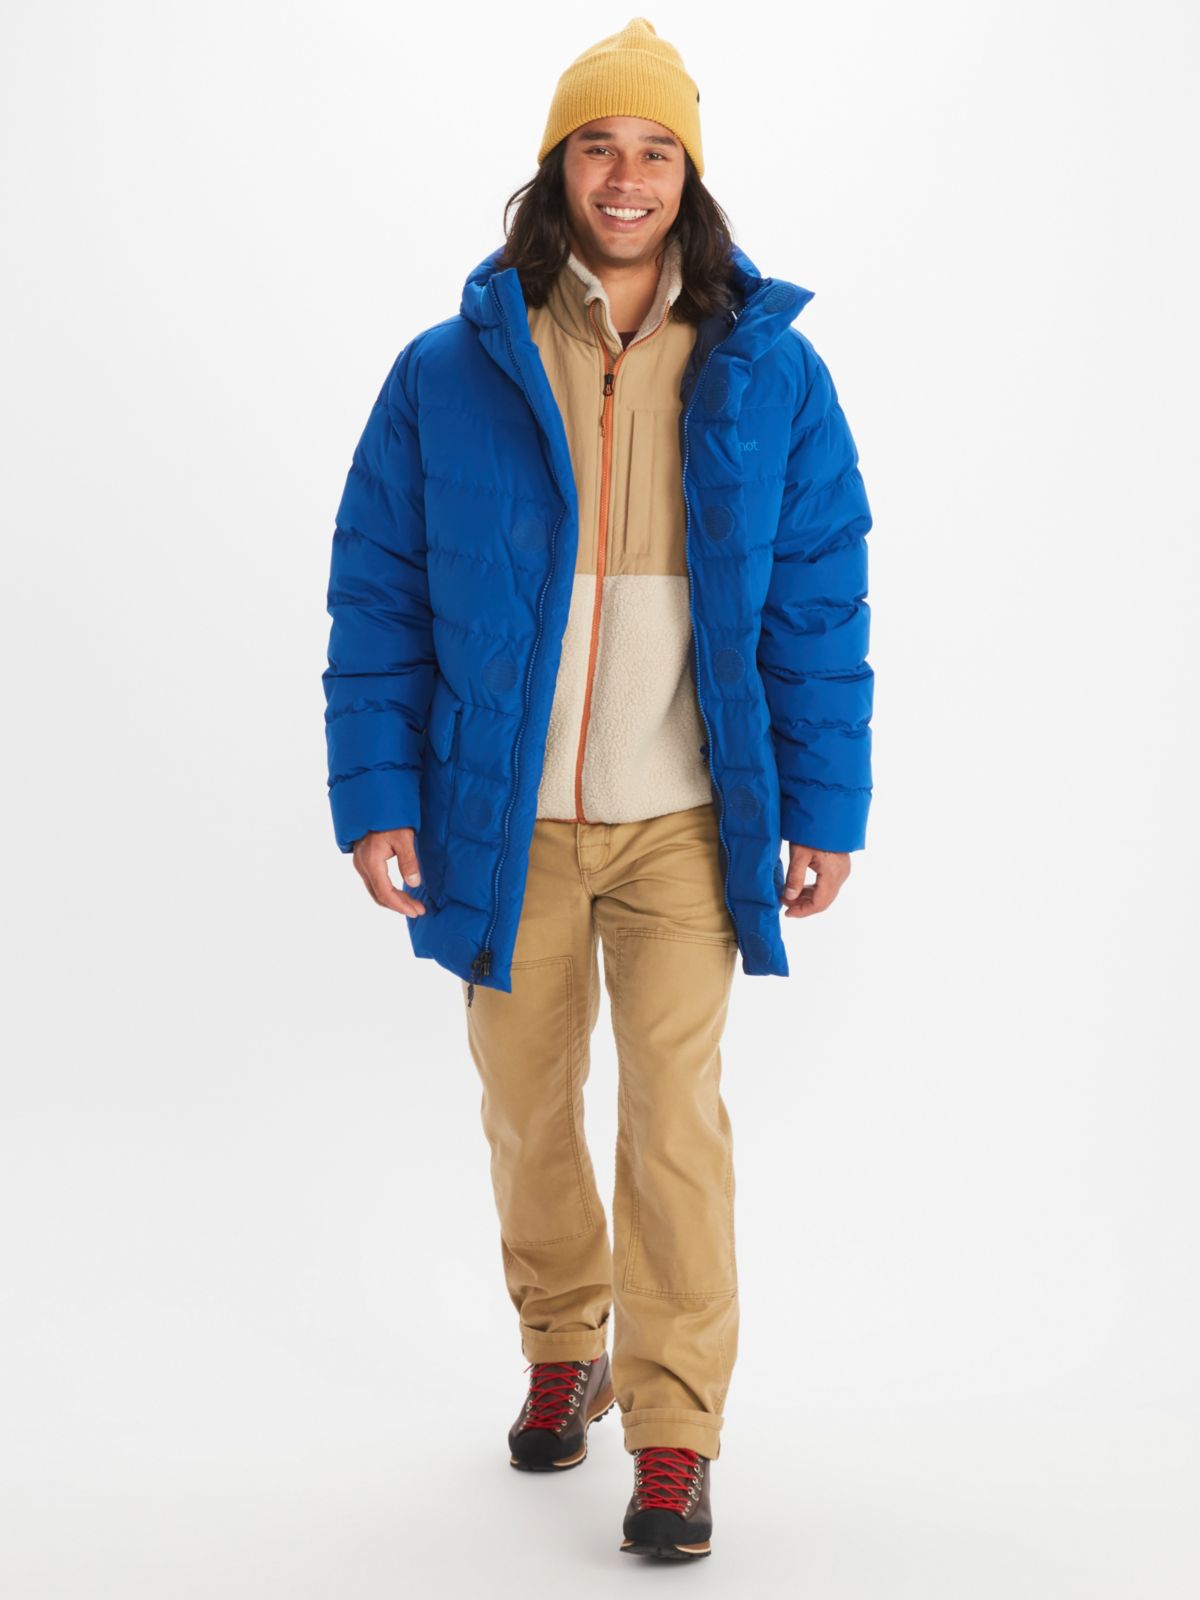 male model wearing assorted winter apparel